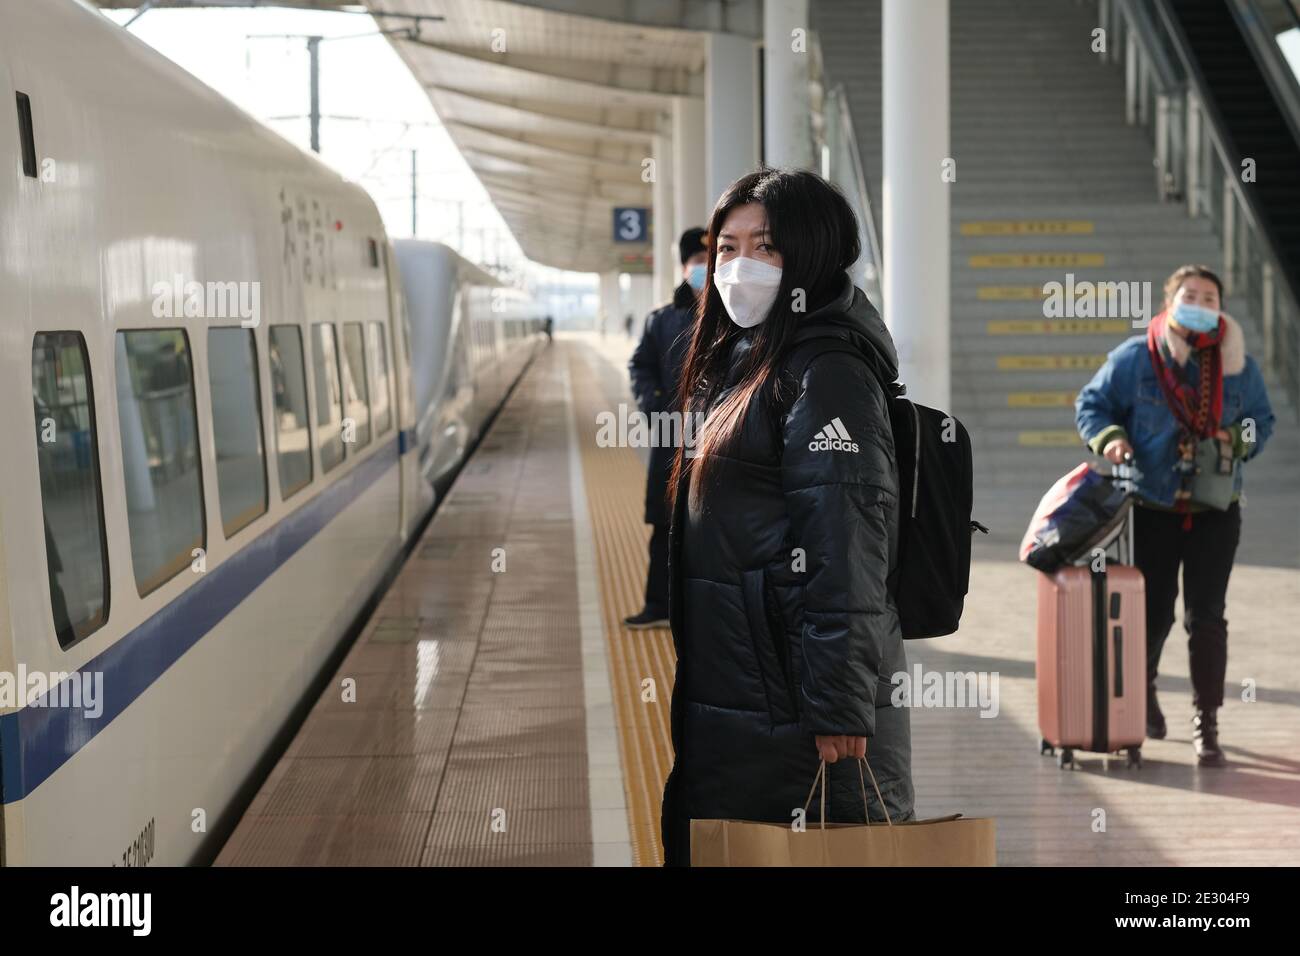 Suzhou.China-Jan.2021: Photo de mi-journée du voyageur chinois sur la plate-forme de la gare, dans le masque facial pour empêcher le coronavirus pendant le Festival de printemps Banque D'Images